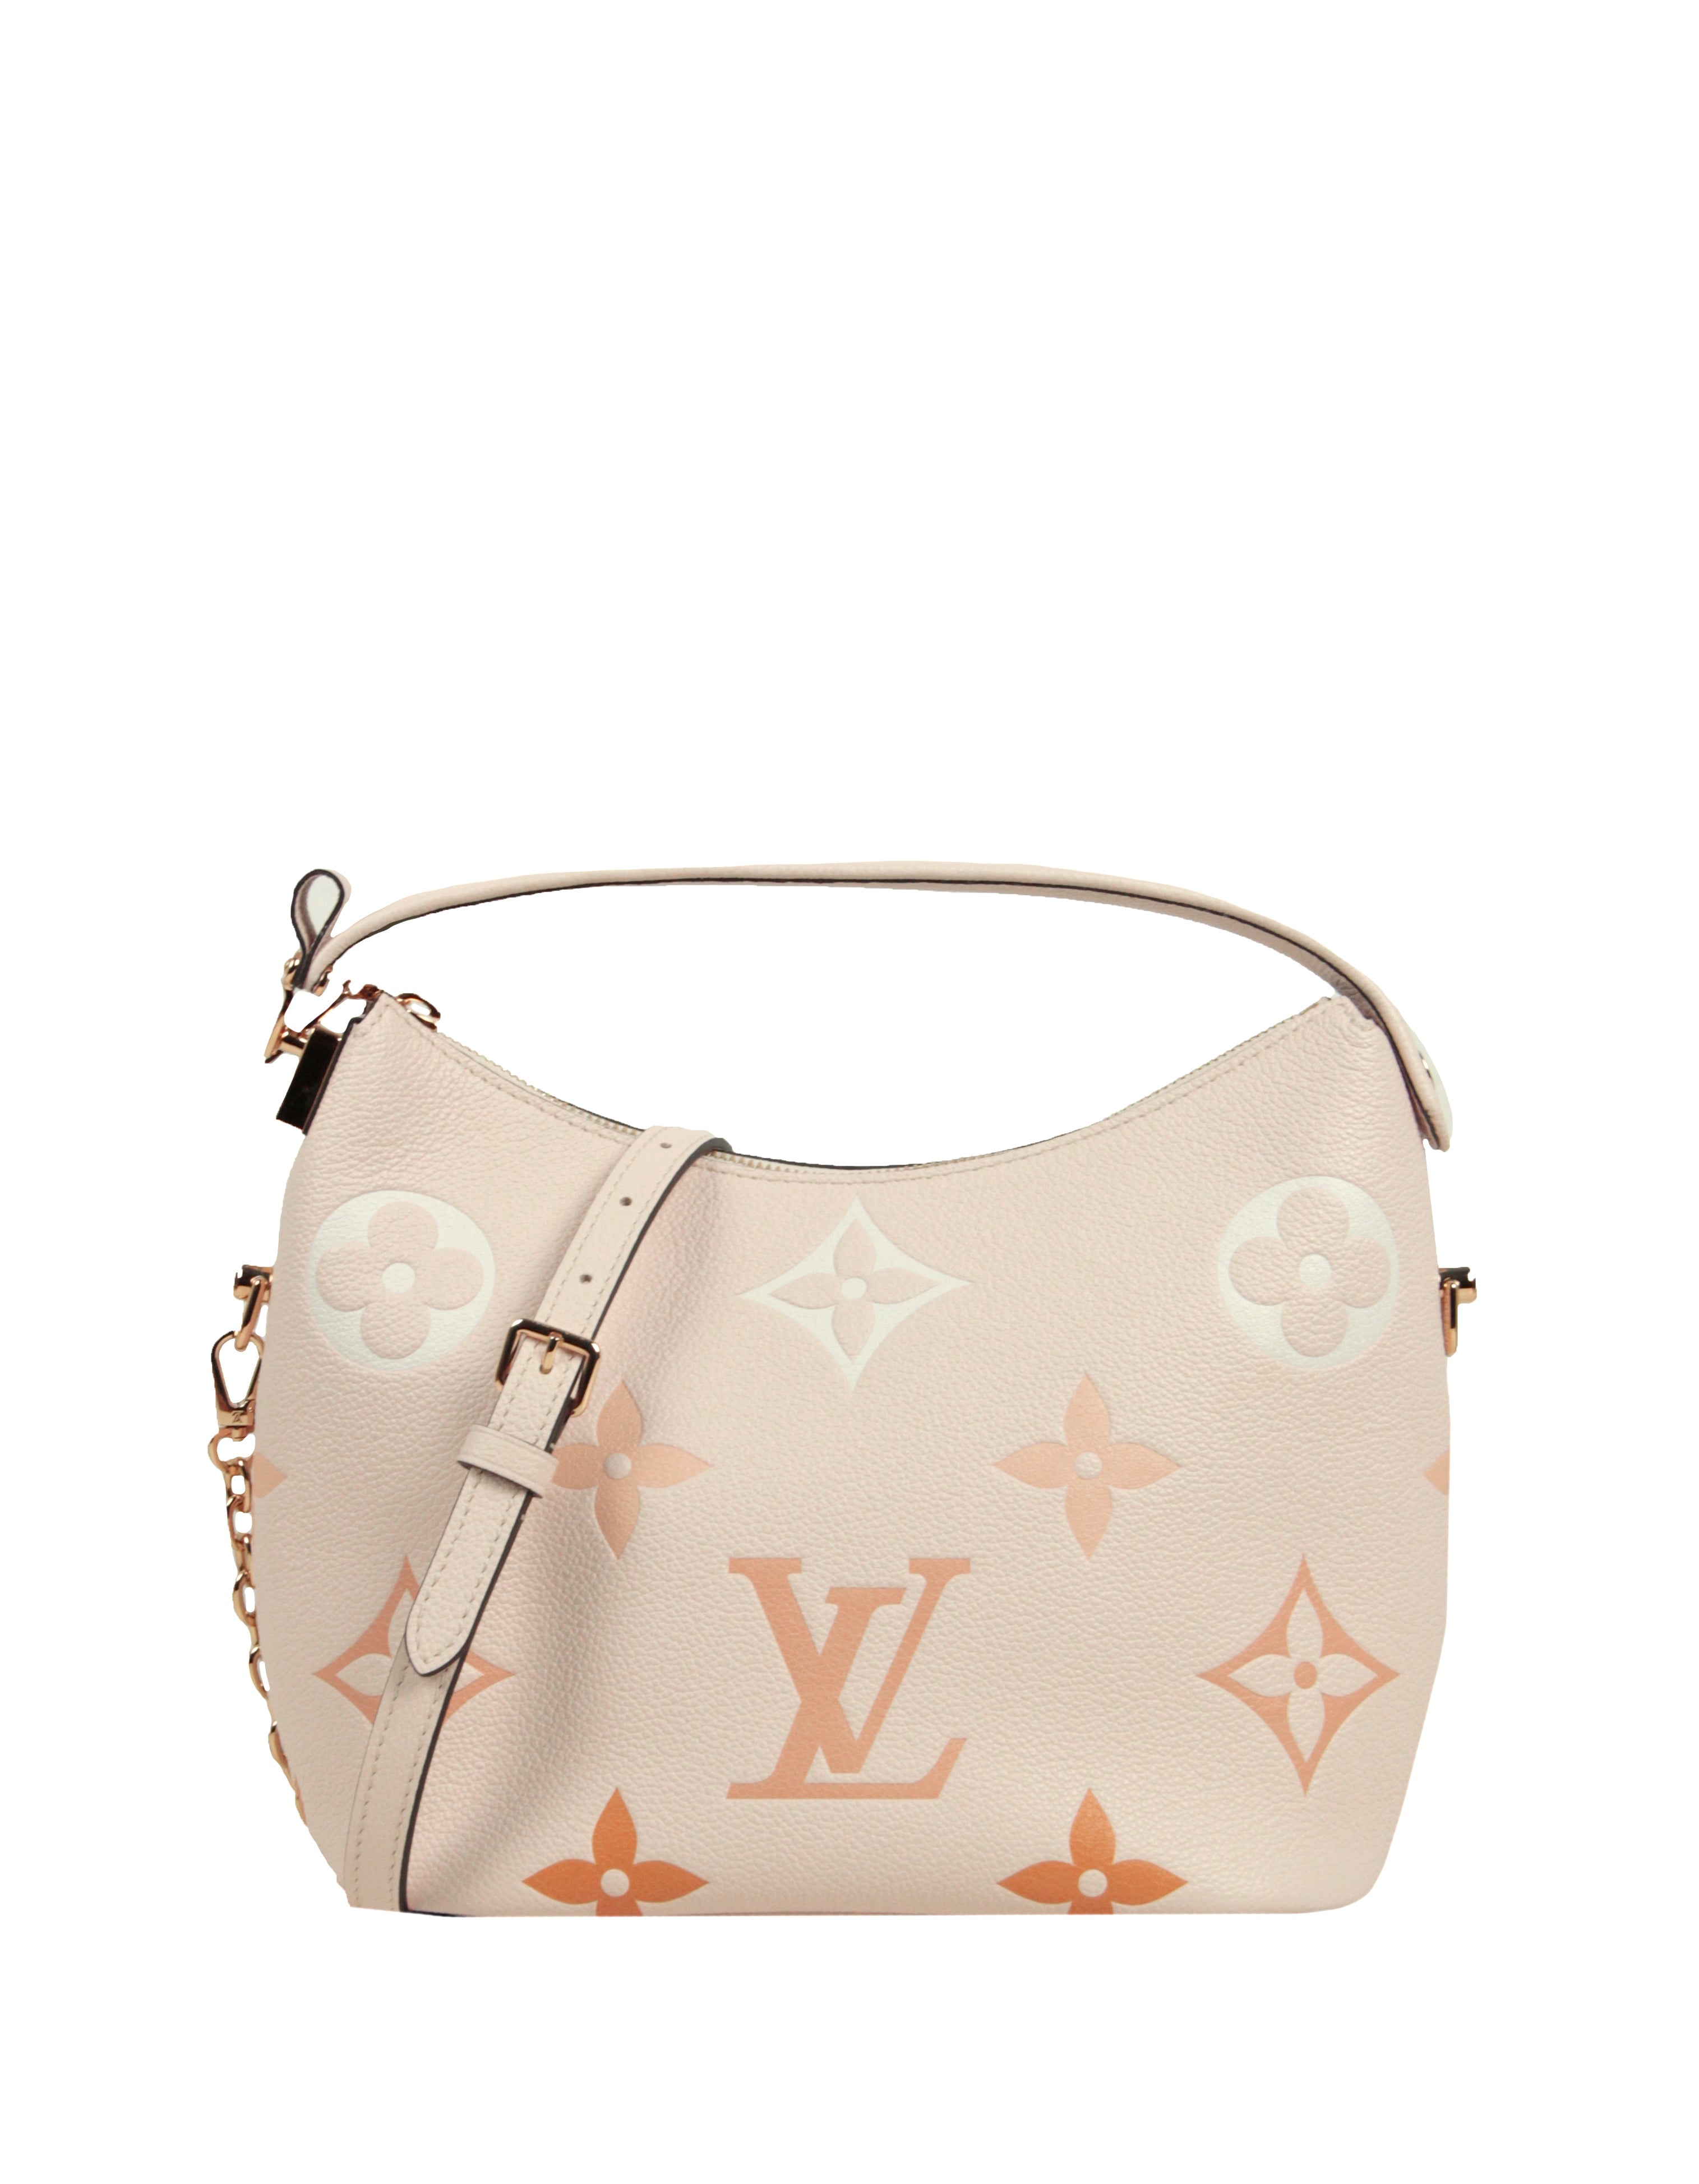 Louis Vuitton Marshmallow Bag by The Pool Monogram Empreinte Giant